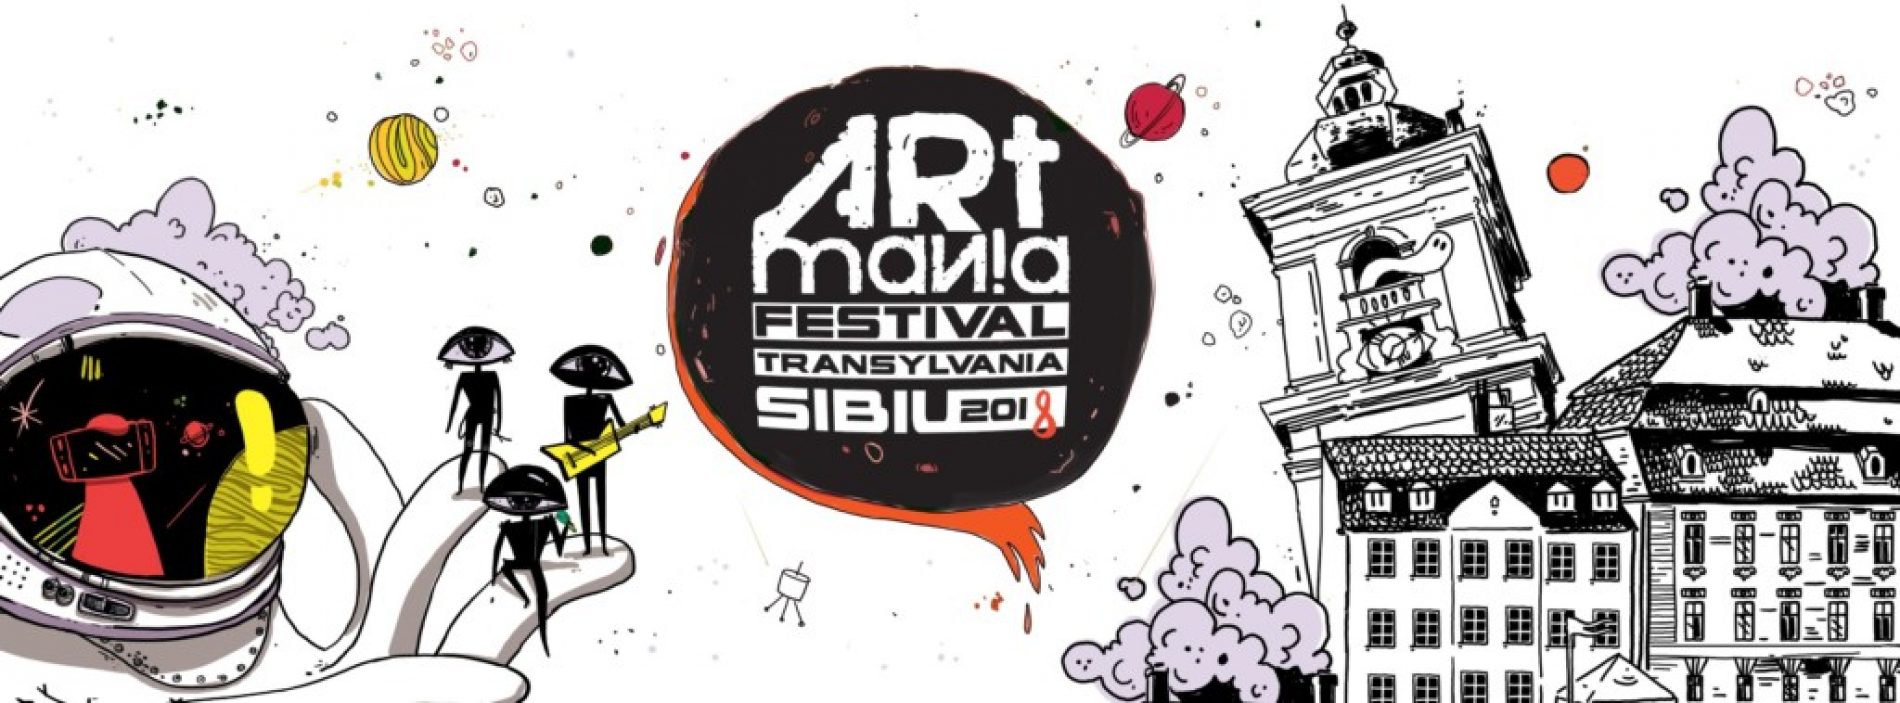 Cea de-a 13-a ediție ARTmania Festival va avea loc în perioada 27 – 28 iulie 2018 în Piața Mare din Sibiu